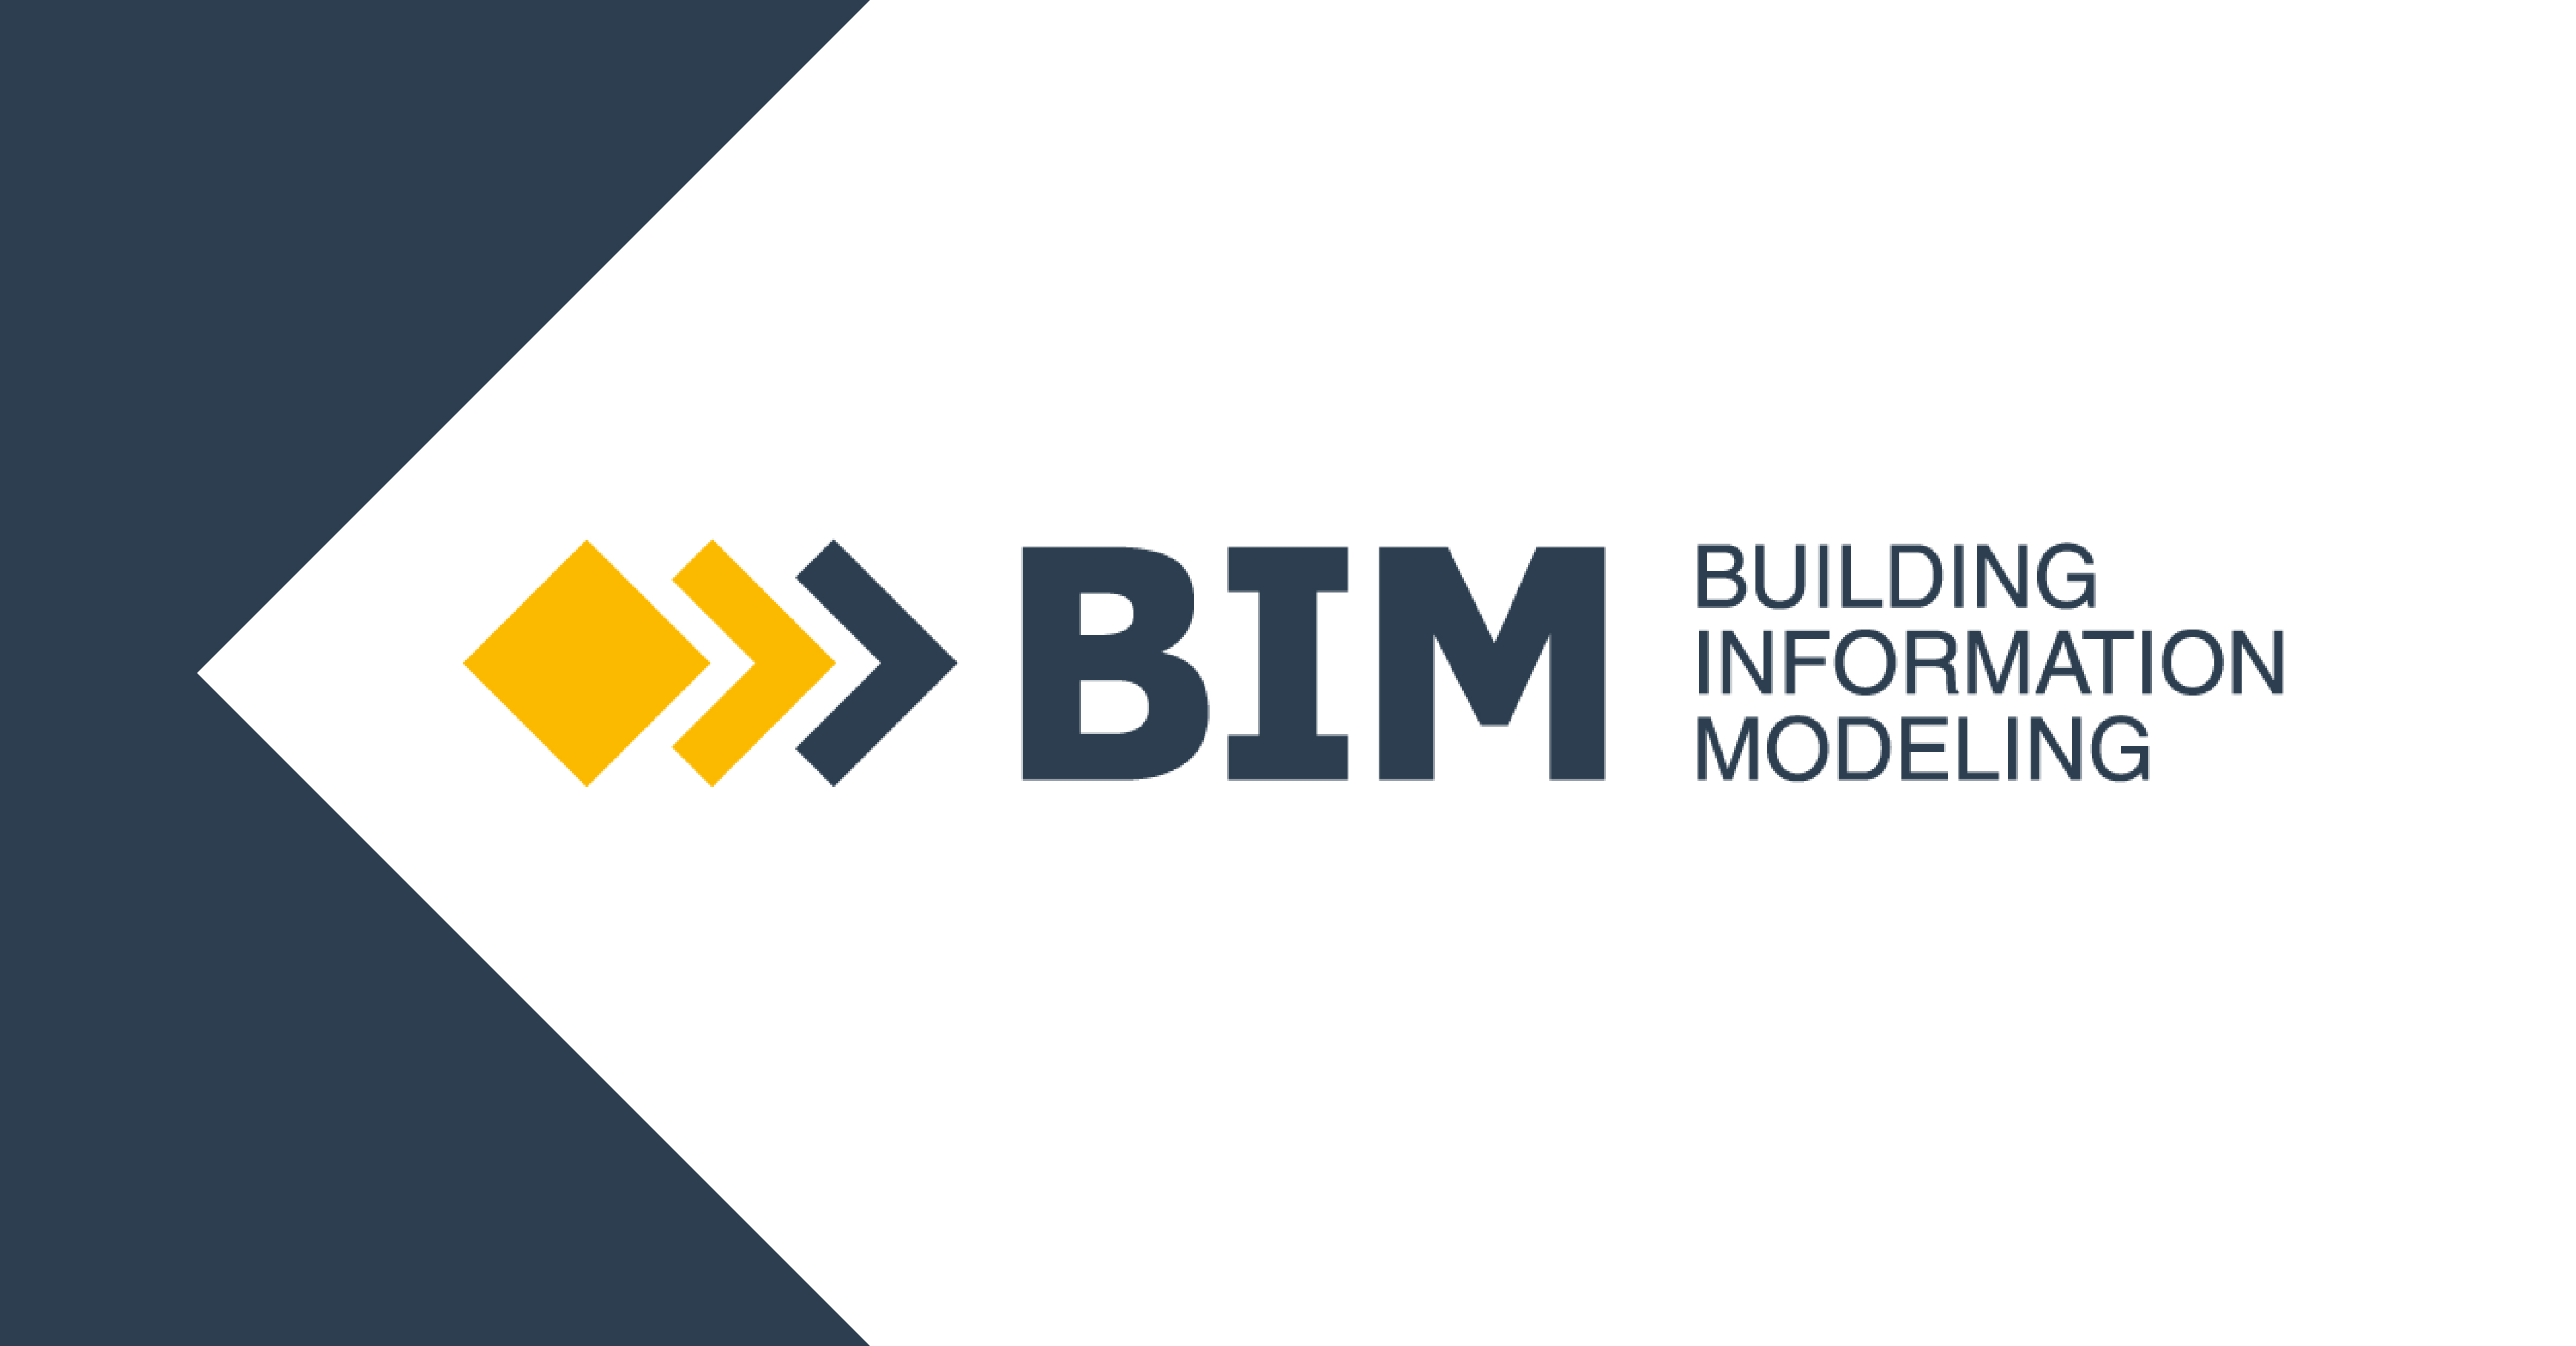 Building Information Modeling (BIM) steht für die digitale Transformation im Bauwesen. BIM verändert die Planungs-, Bau- und Betriebsprozesse eines Gebäudes und macht diese effizienter und transparenter.  BIM bietet enorme Zeitvorteile für den Investor/Auftraggeber, insbesondere beim kritischen Übergang von der Planungs- zur Errichtungsphase.